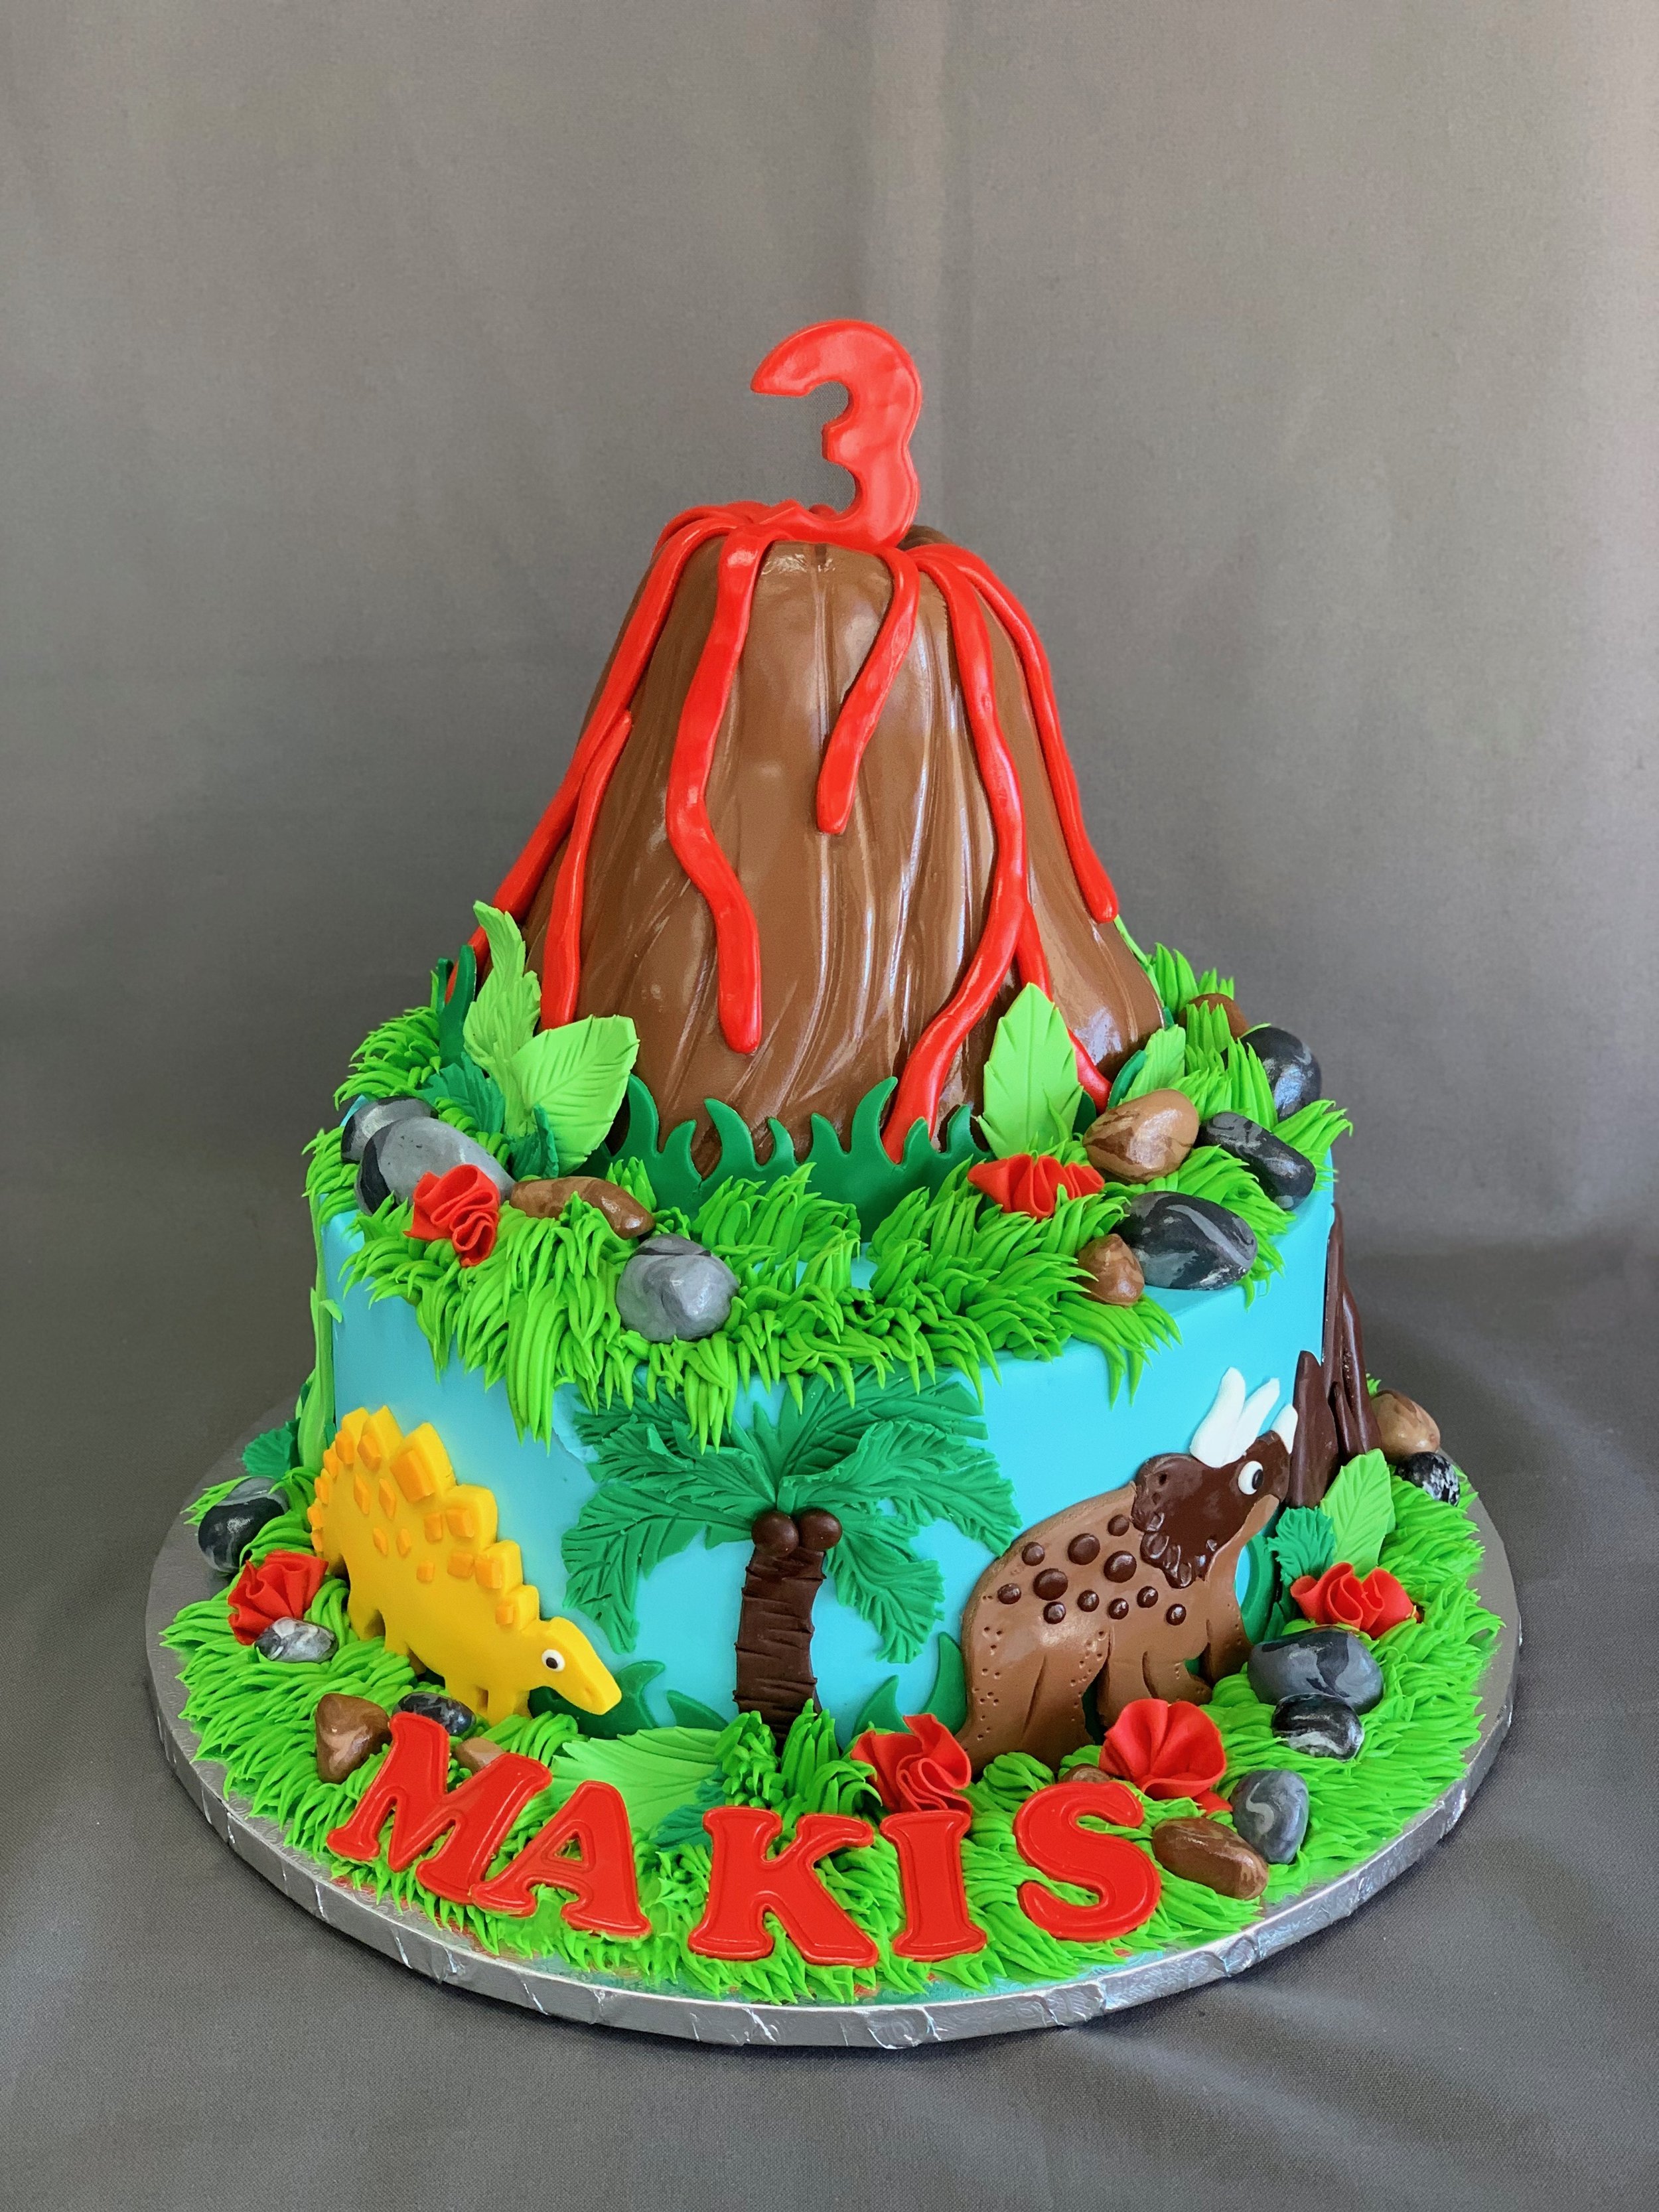 Amazing Award-Winning Double Chocolate Volcano Cake - fountainof30.com